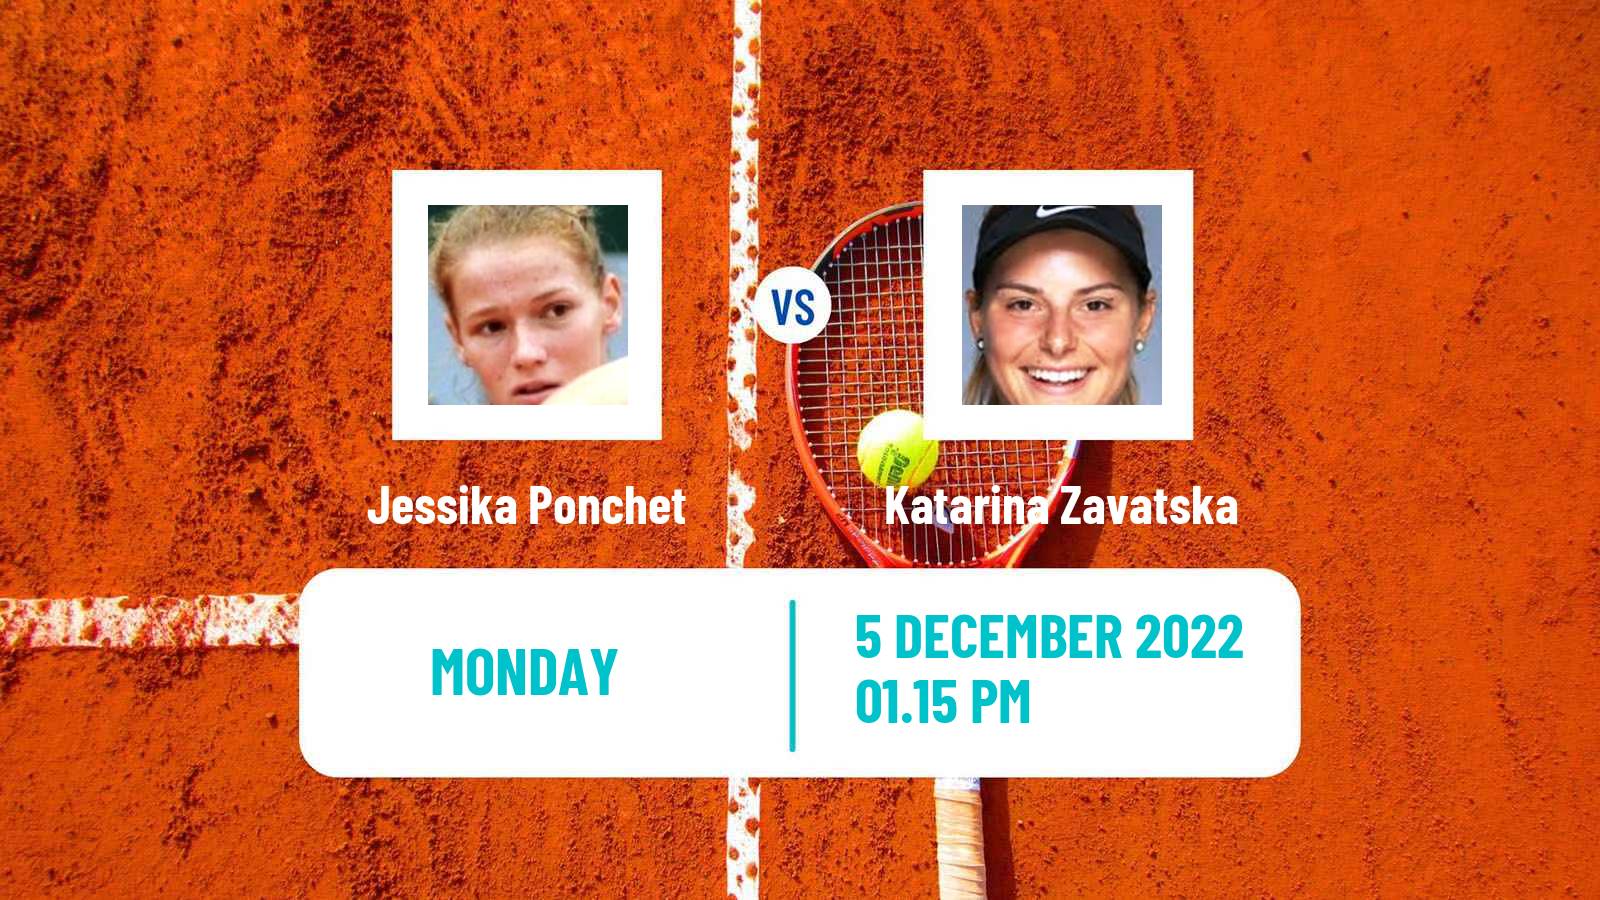 Tennis ATP Challenger Jessika Ponchet - Katarina Zavatska